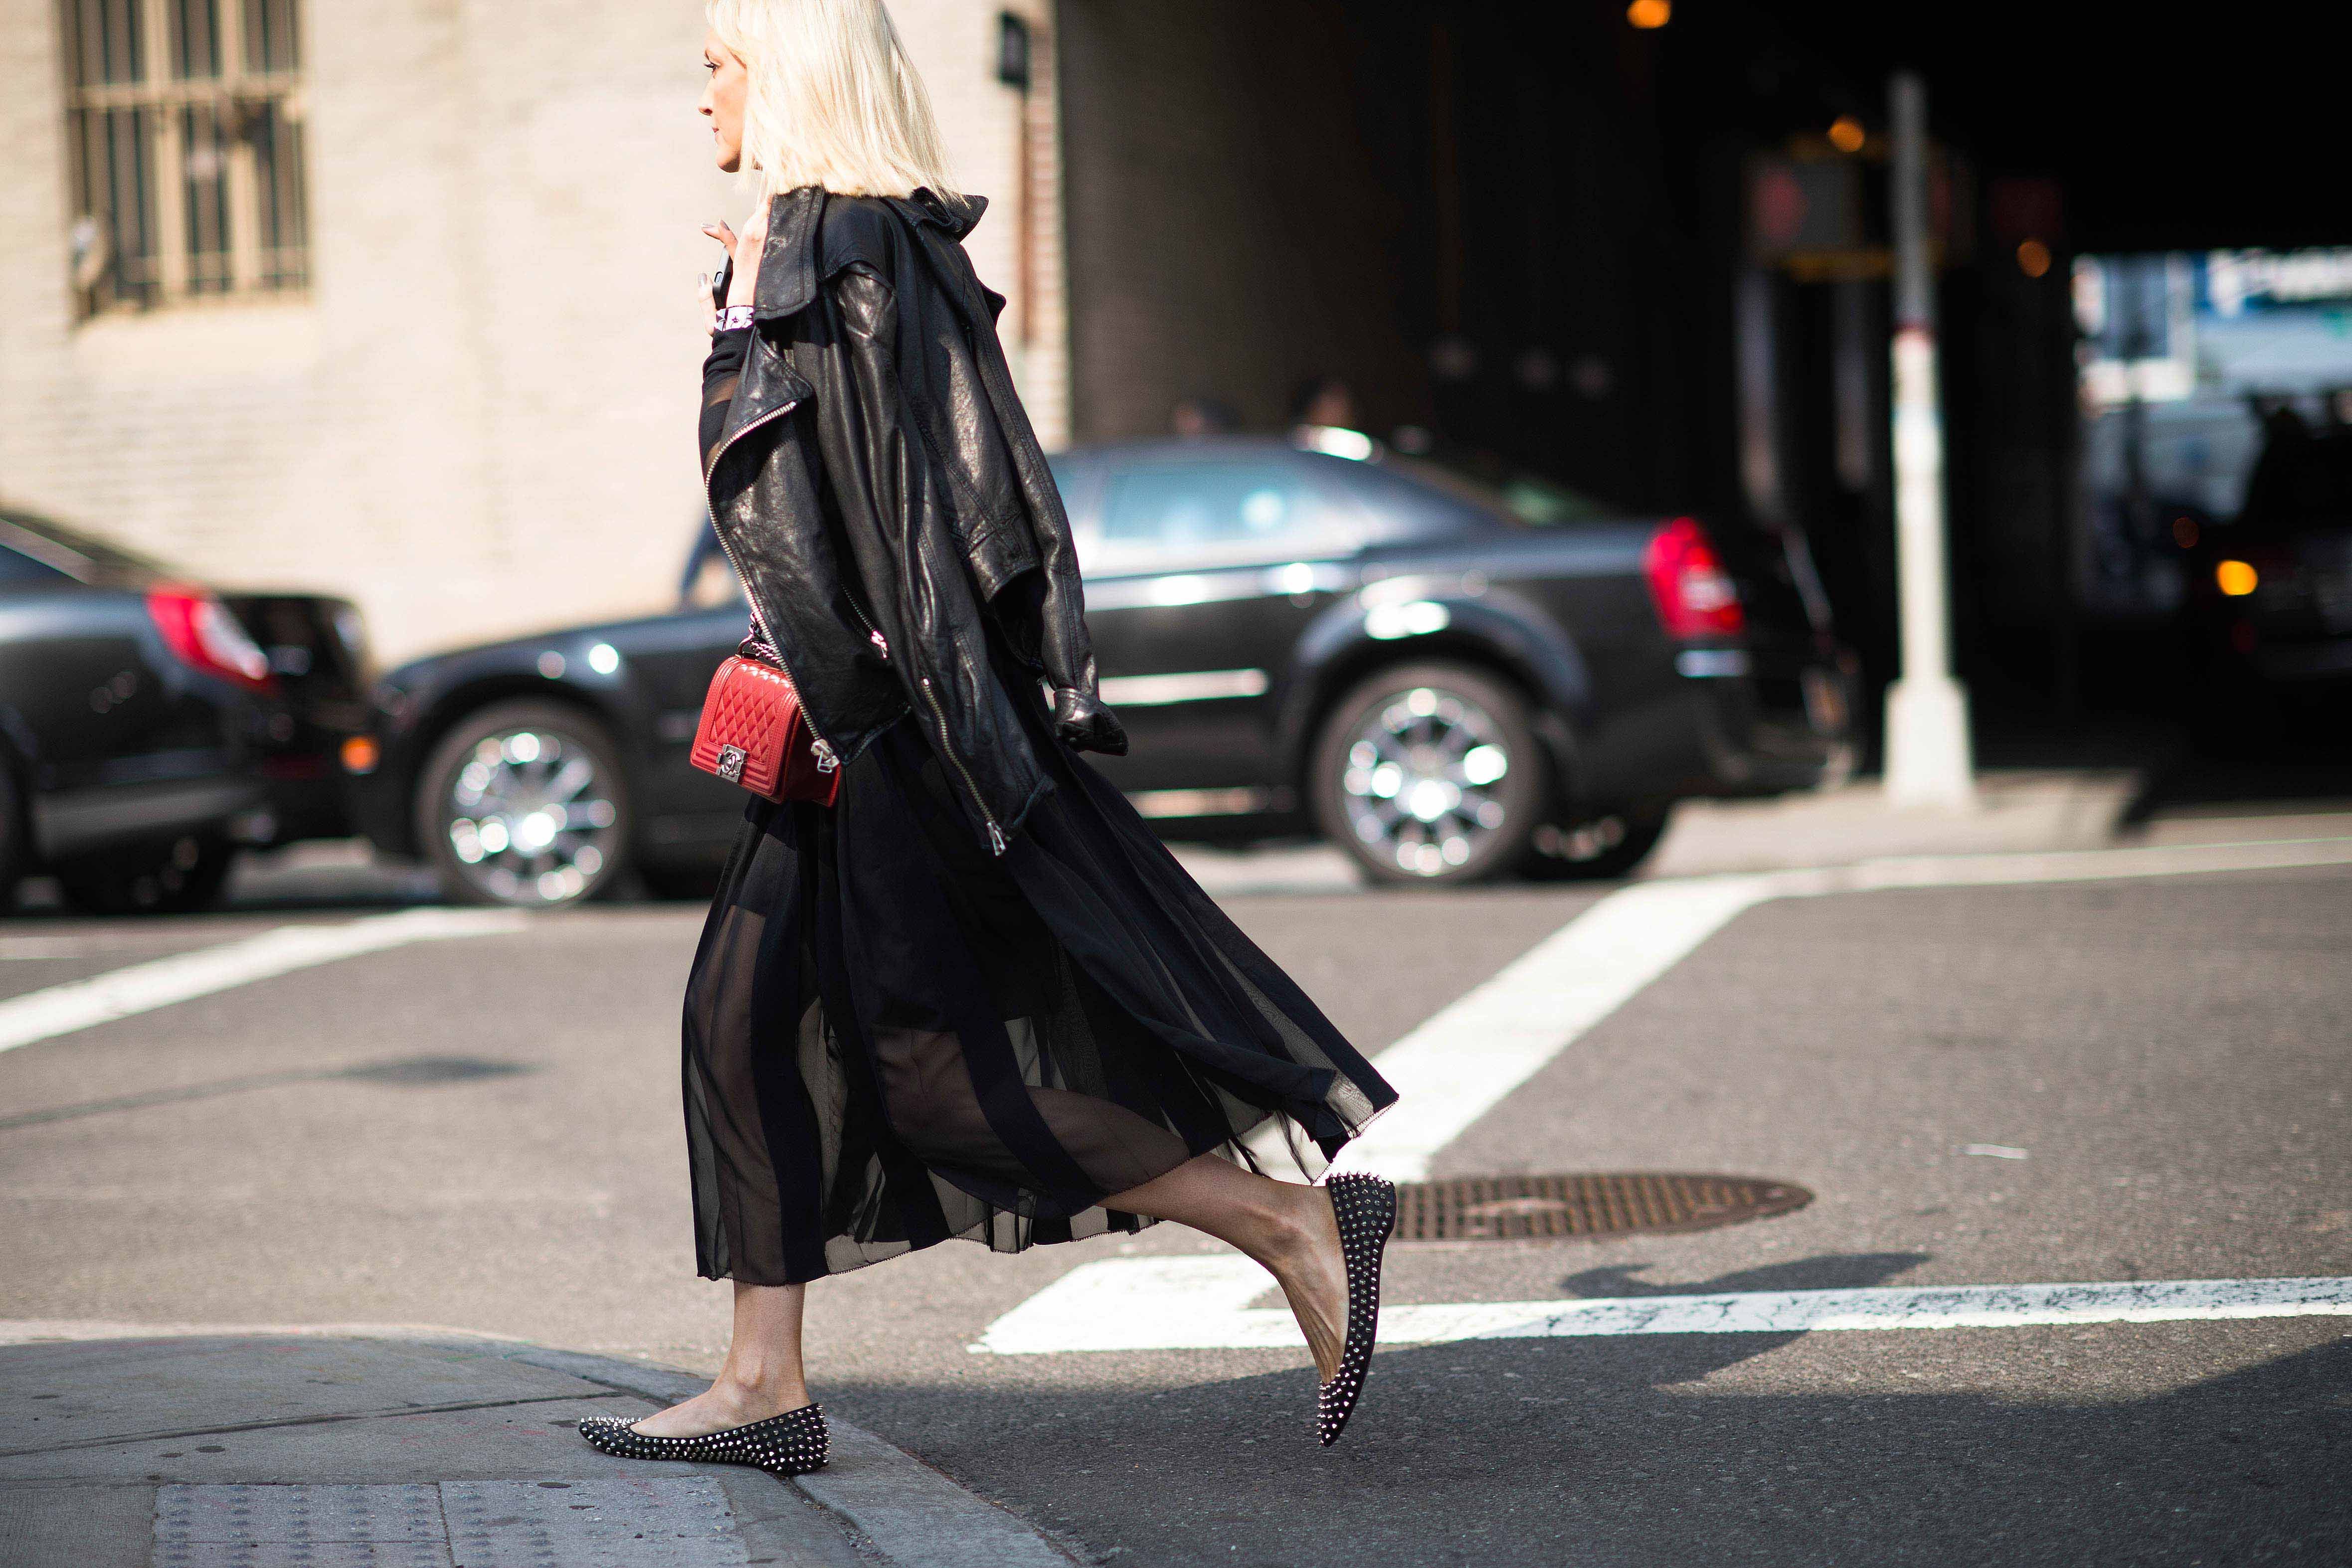 new-york-fashion-week-street-style-black-sheer-dress-leather-jacket-studded-flats-aa744e5f9bb72b8a37295a3f0428499e.jpg